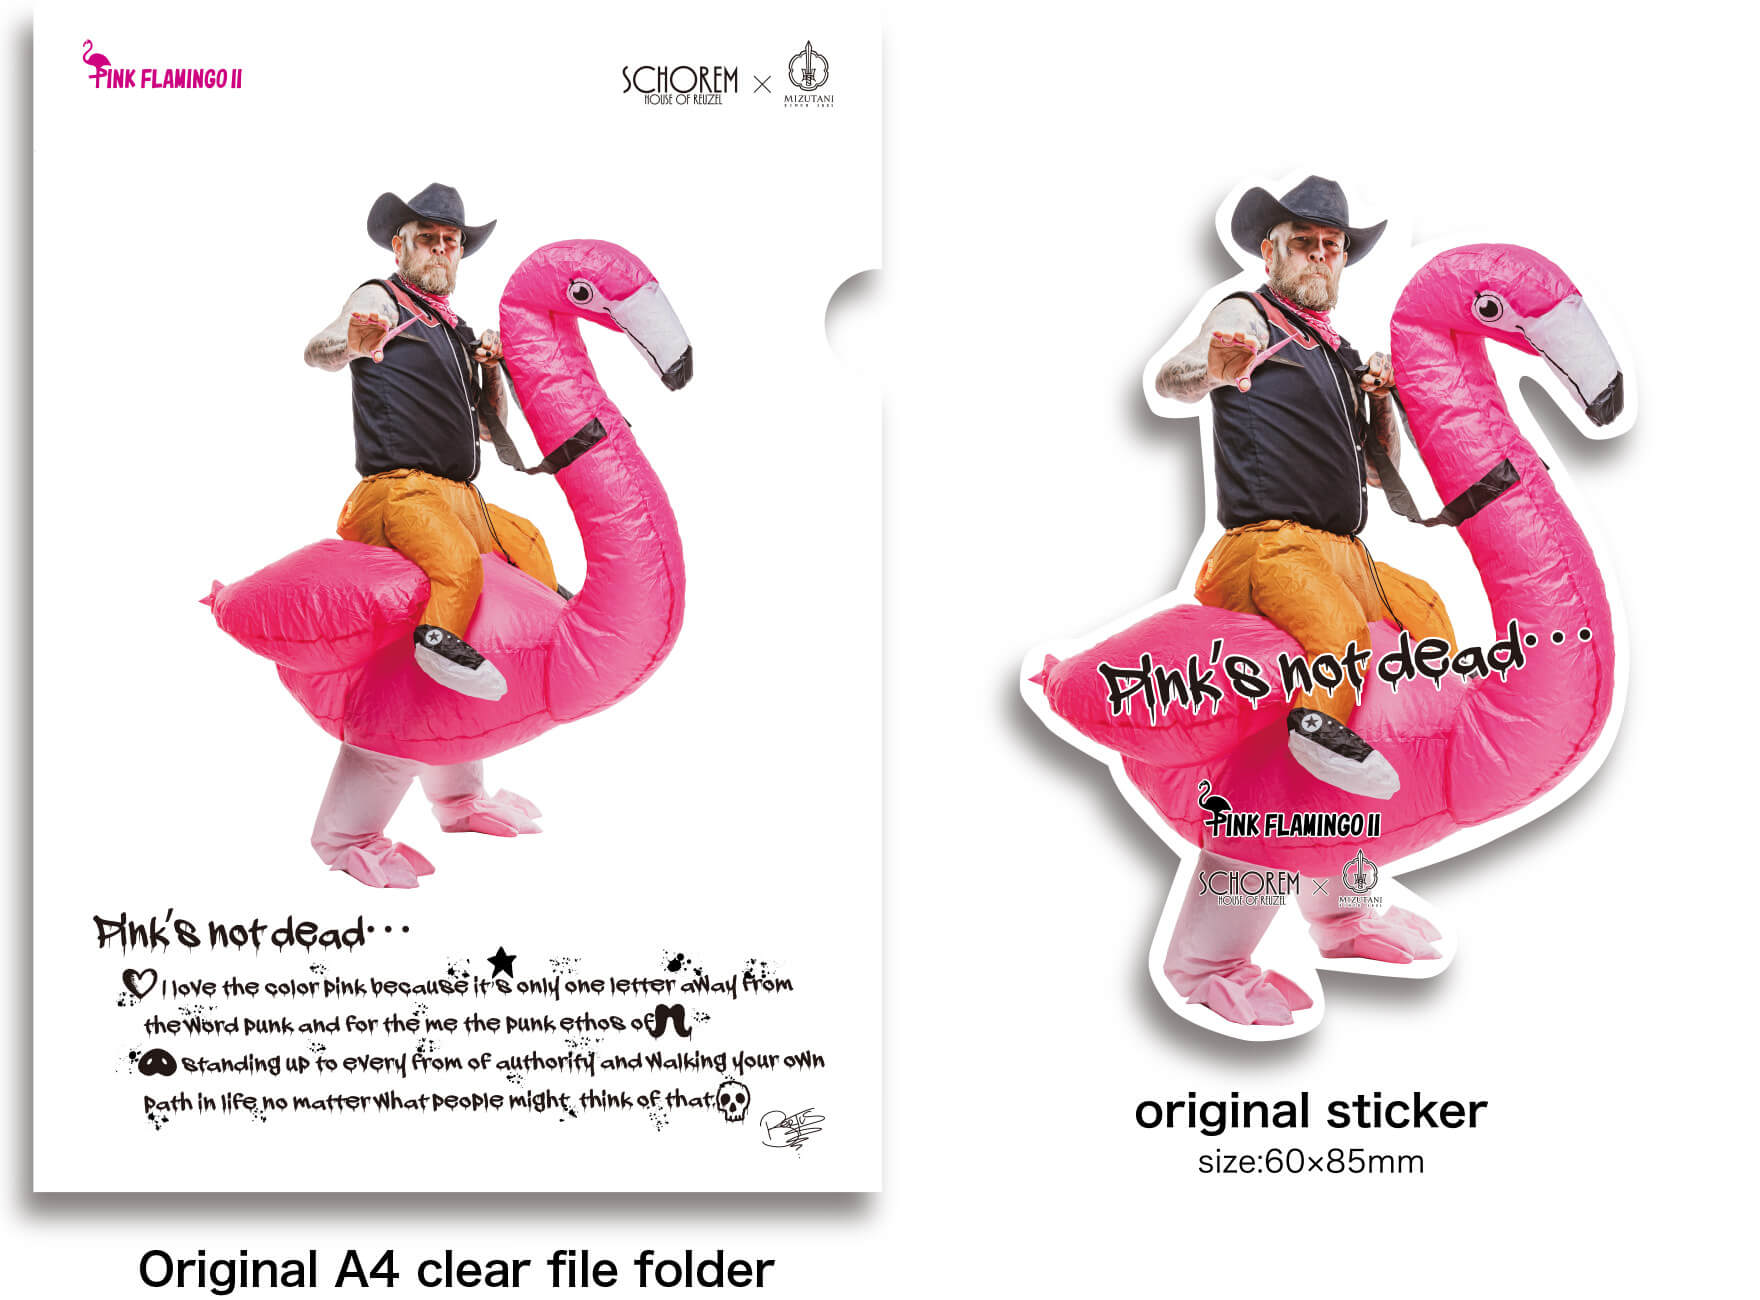 Original A4 clear file folder / original sticker